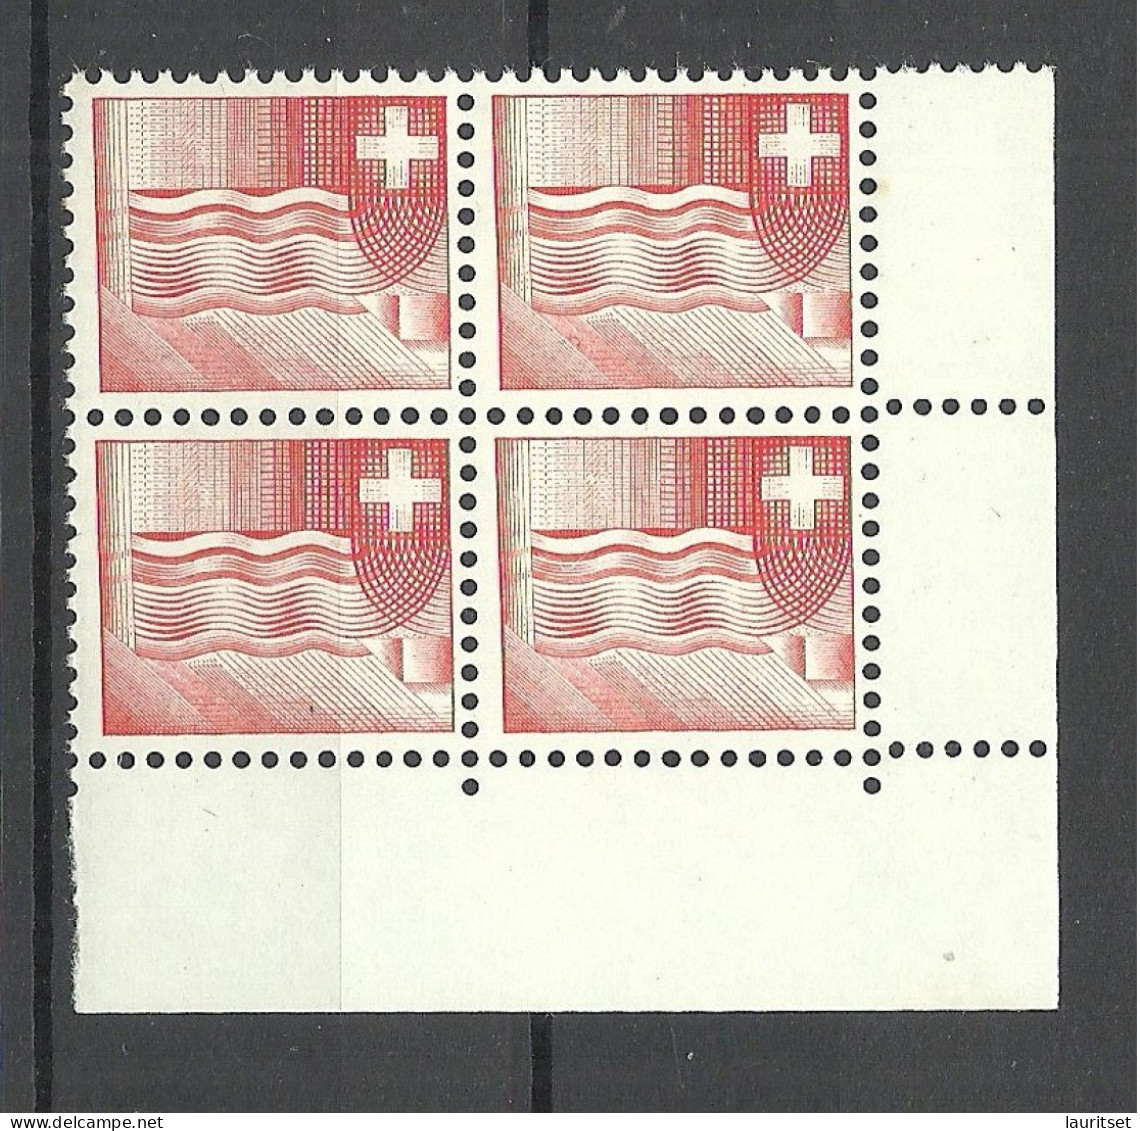 SCHWEIZ Switzerland 1964 Essay Druckprobe Muster As 4-block MNH - Abarten